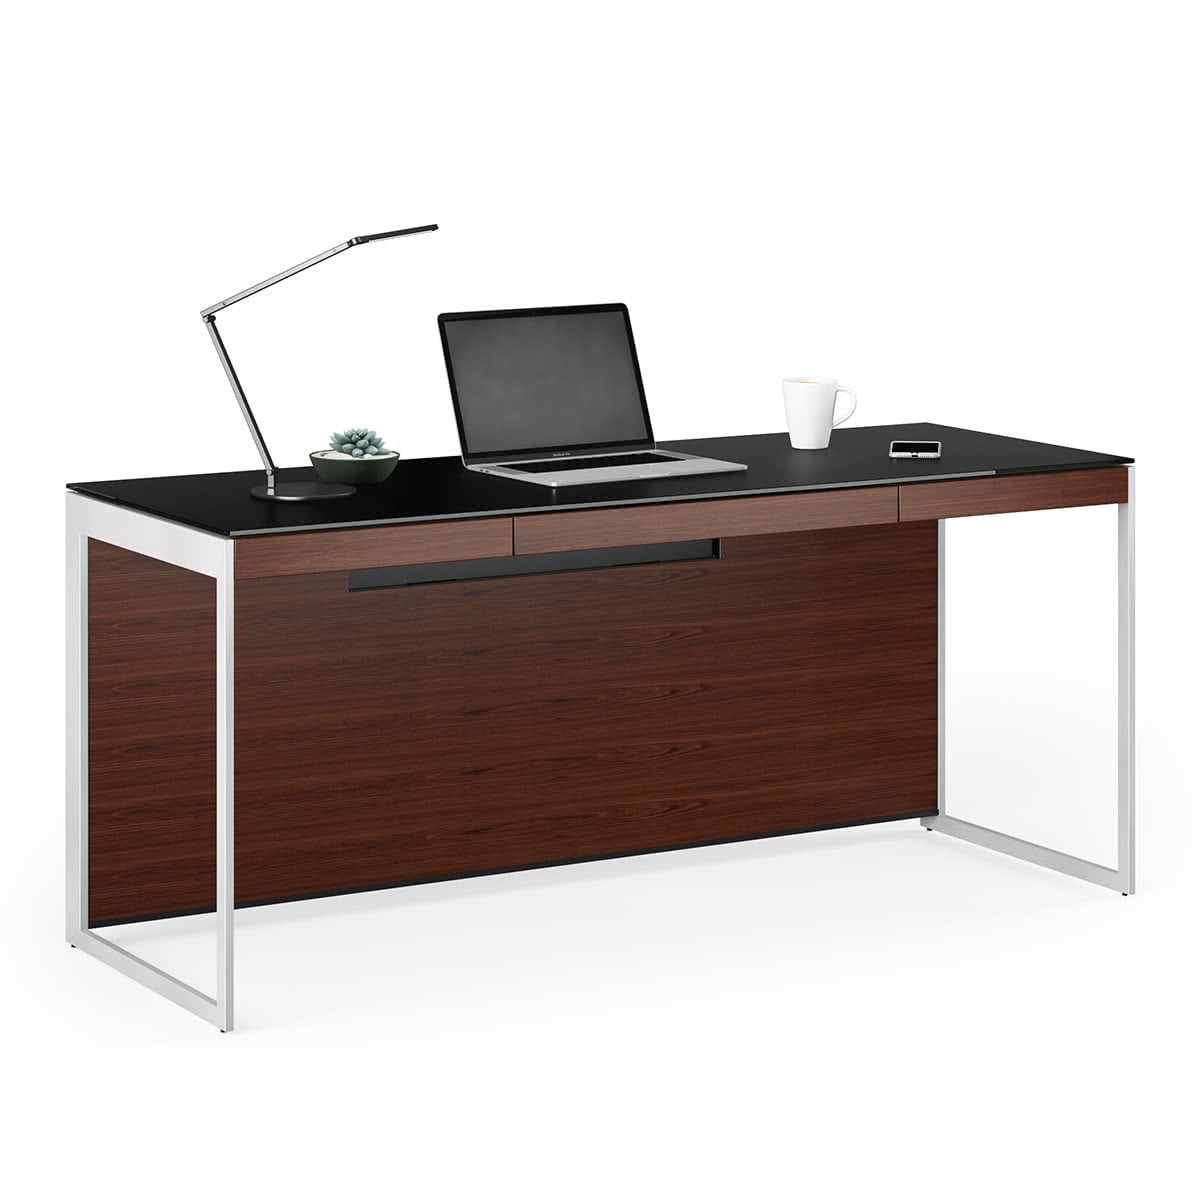 BDI Sequel 20 6101 Desk (Chocolate/Nickel)